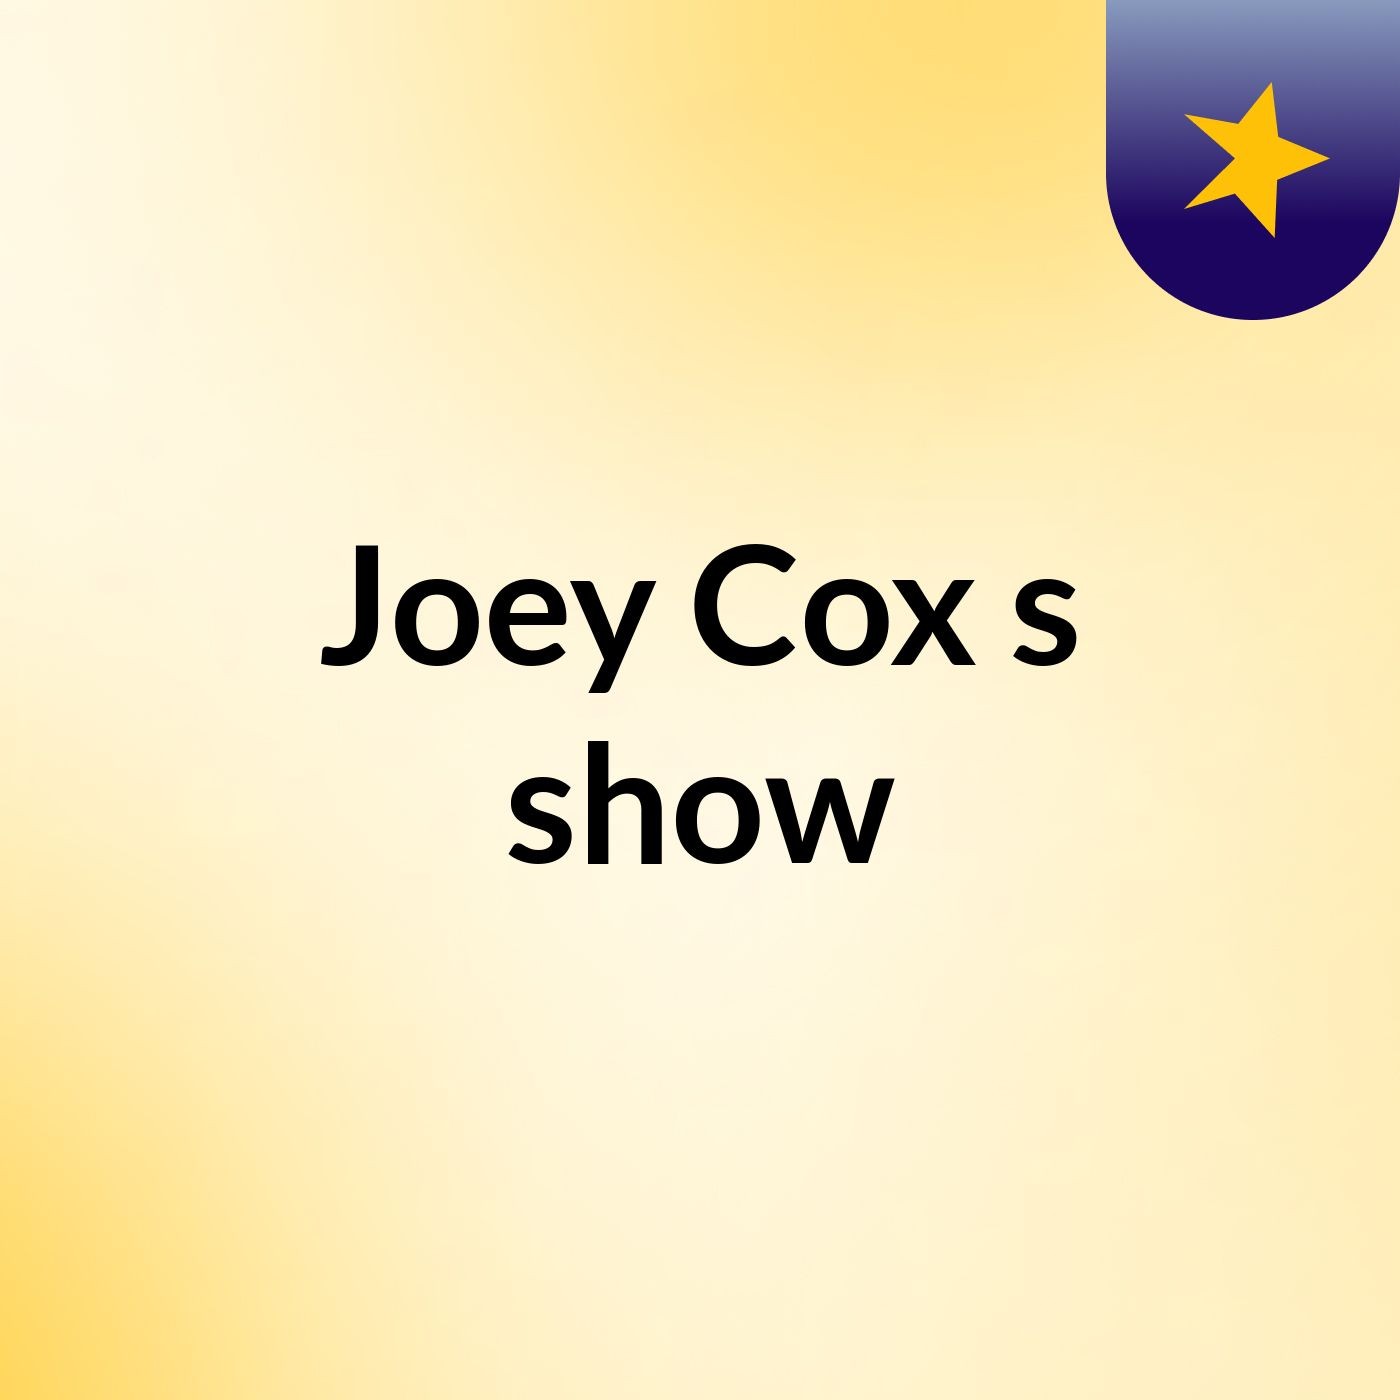 Joey Cox's show